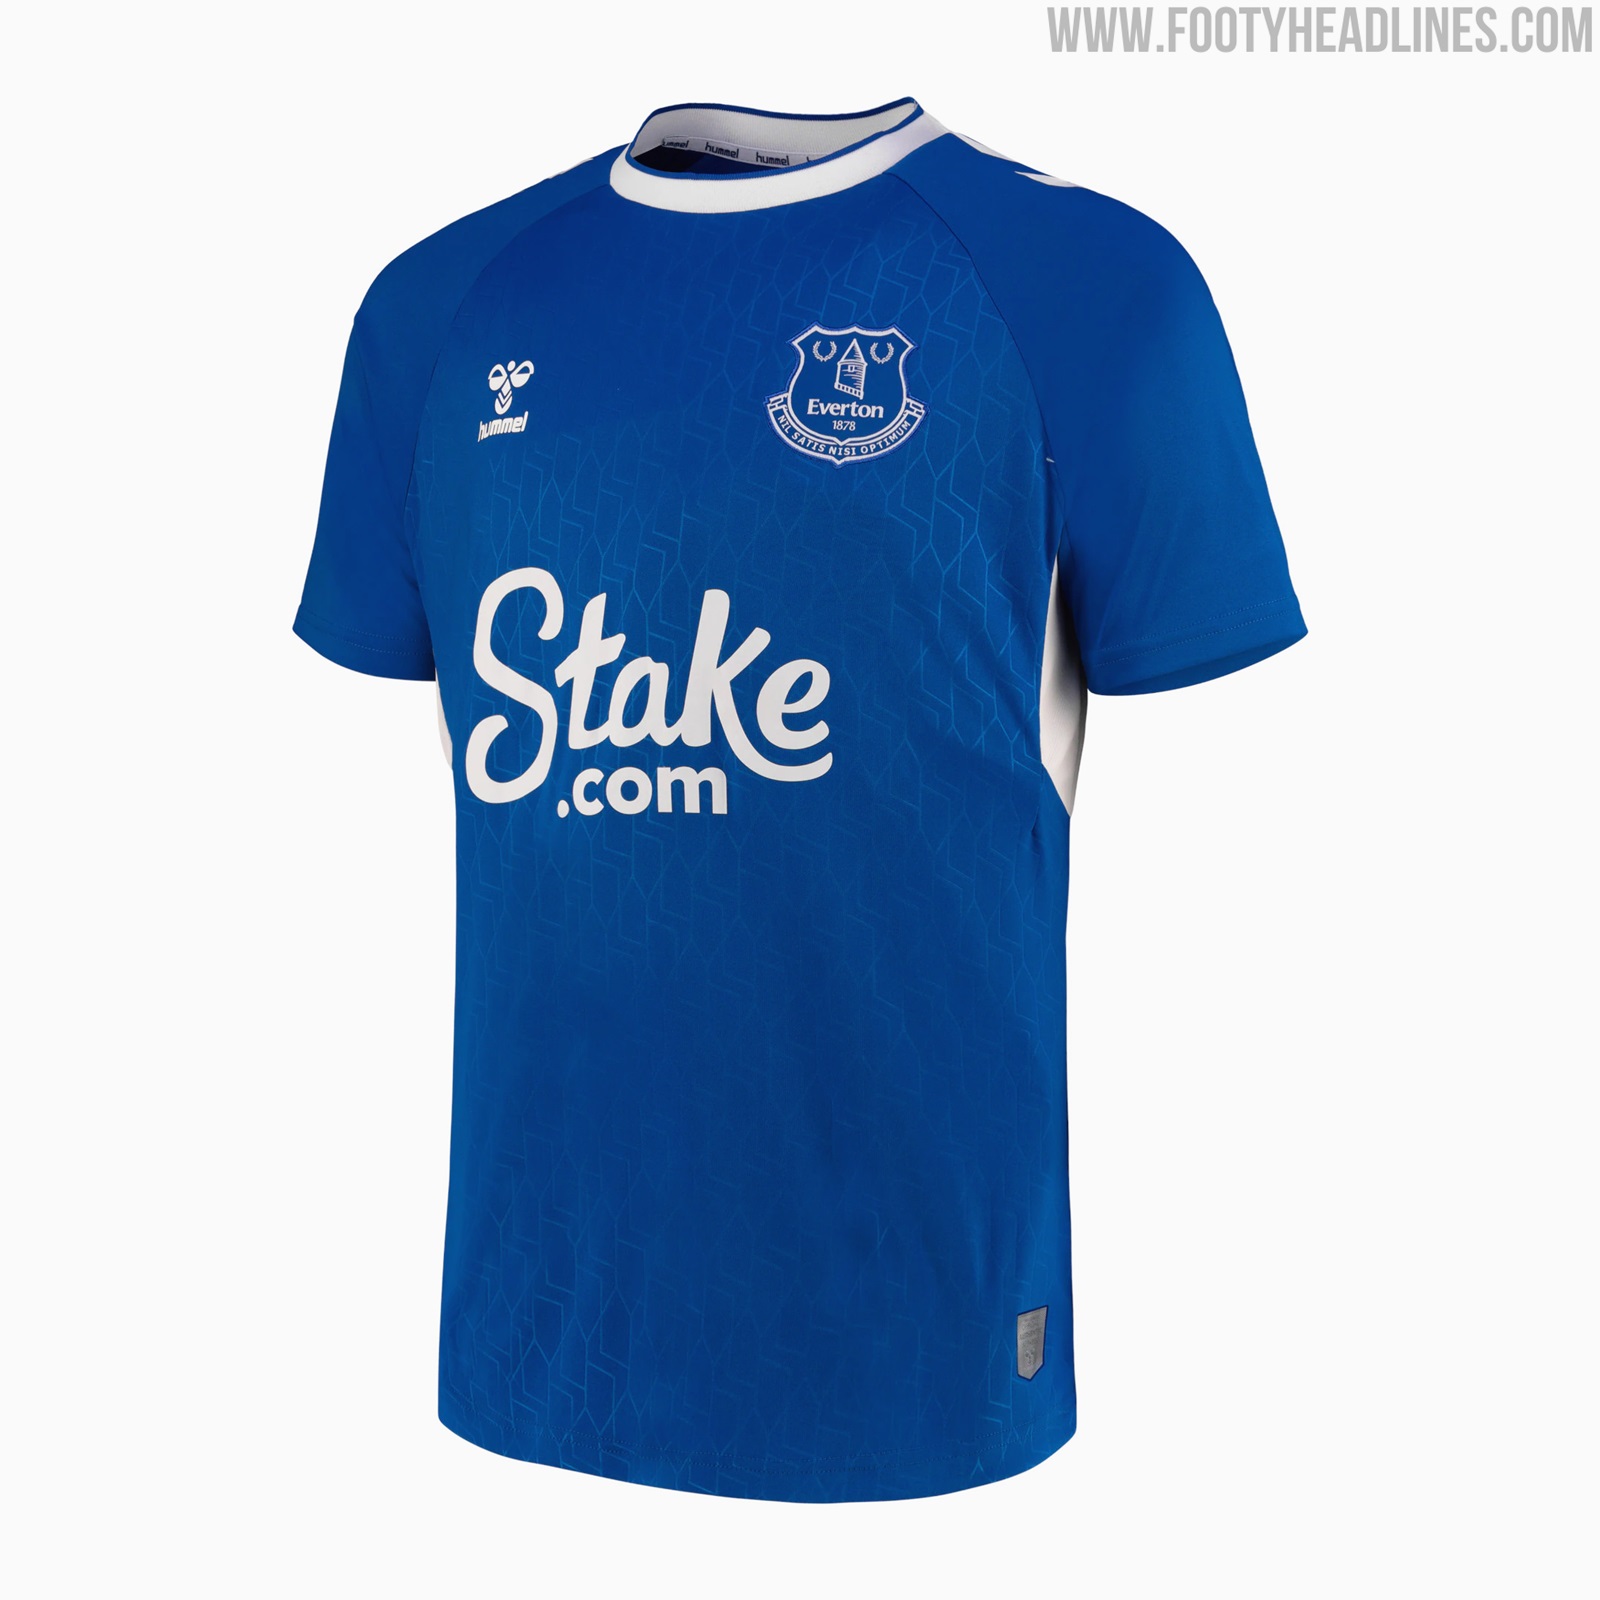 Everton 23-24 Away & Goalkeeper Kits Released - Footy Headlines